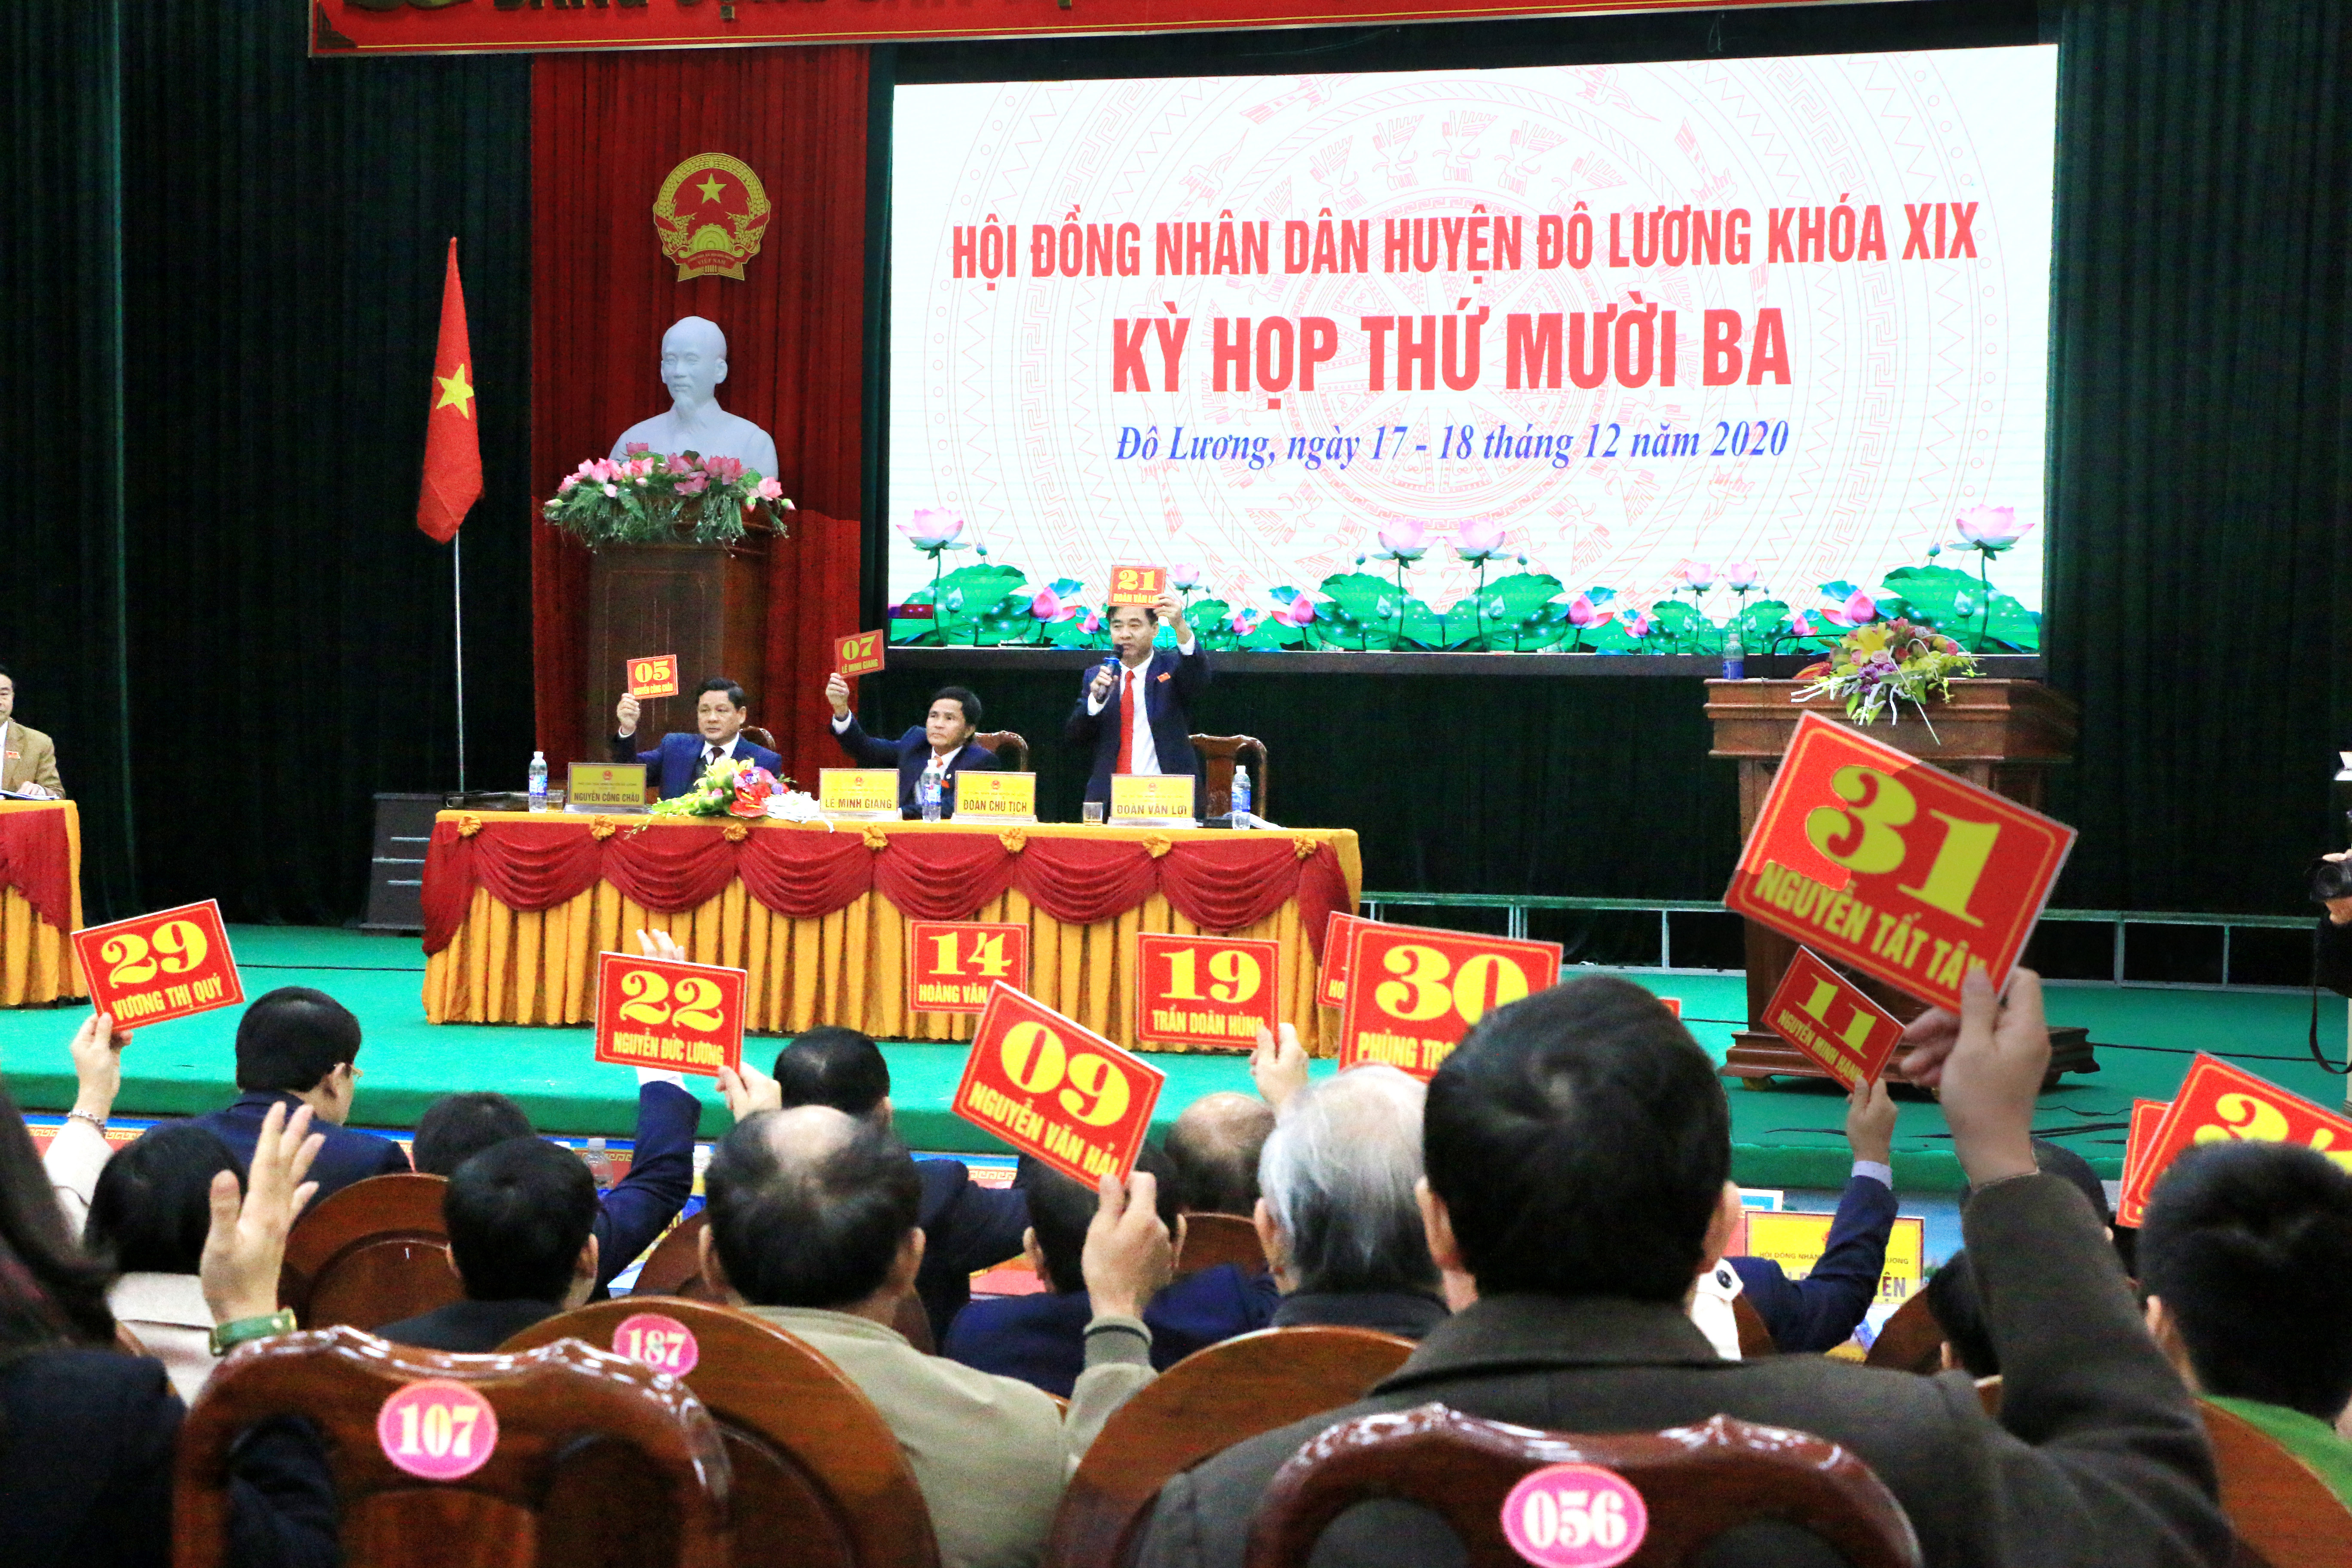 Quang cảnh kỳ họp HĐND huyện Đô Lương. Ảnh Hữu Hoàn